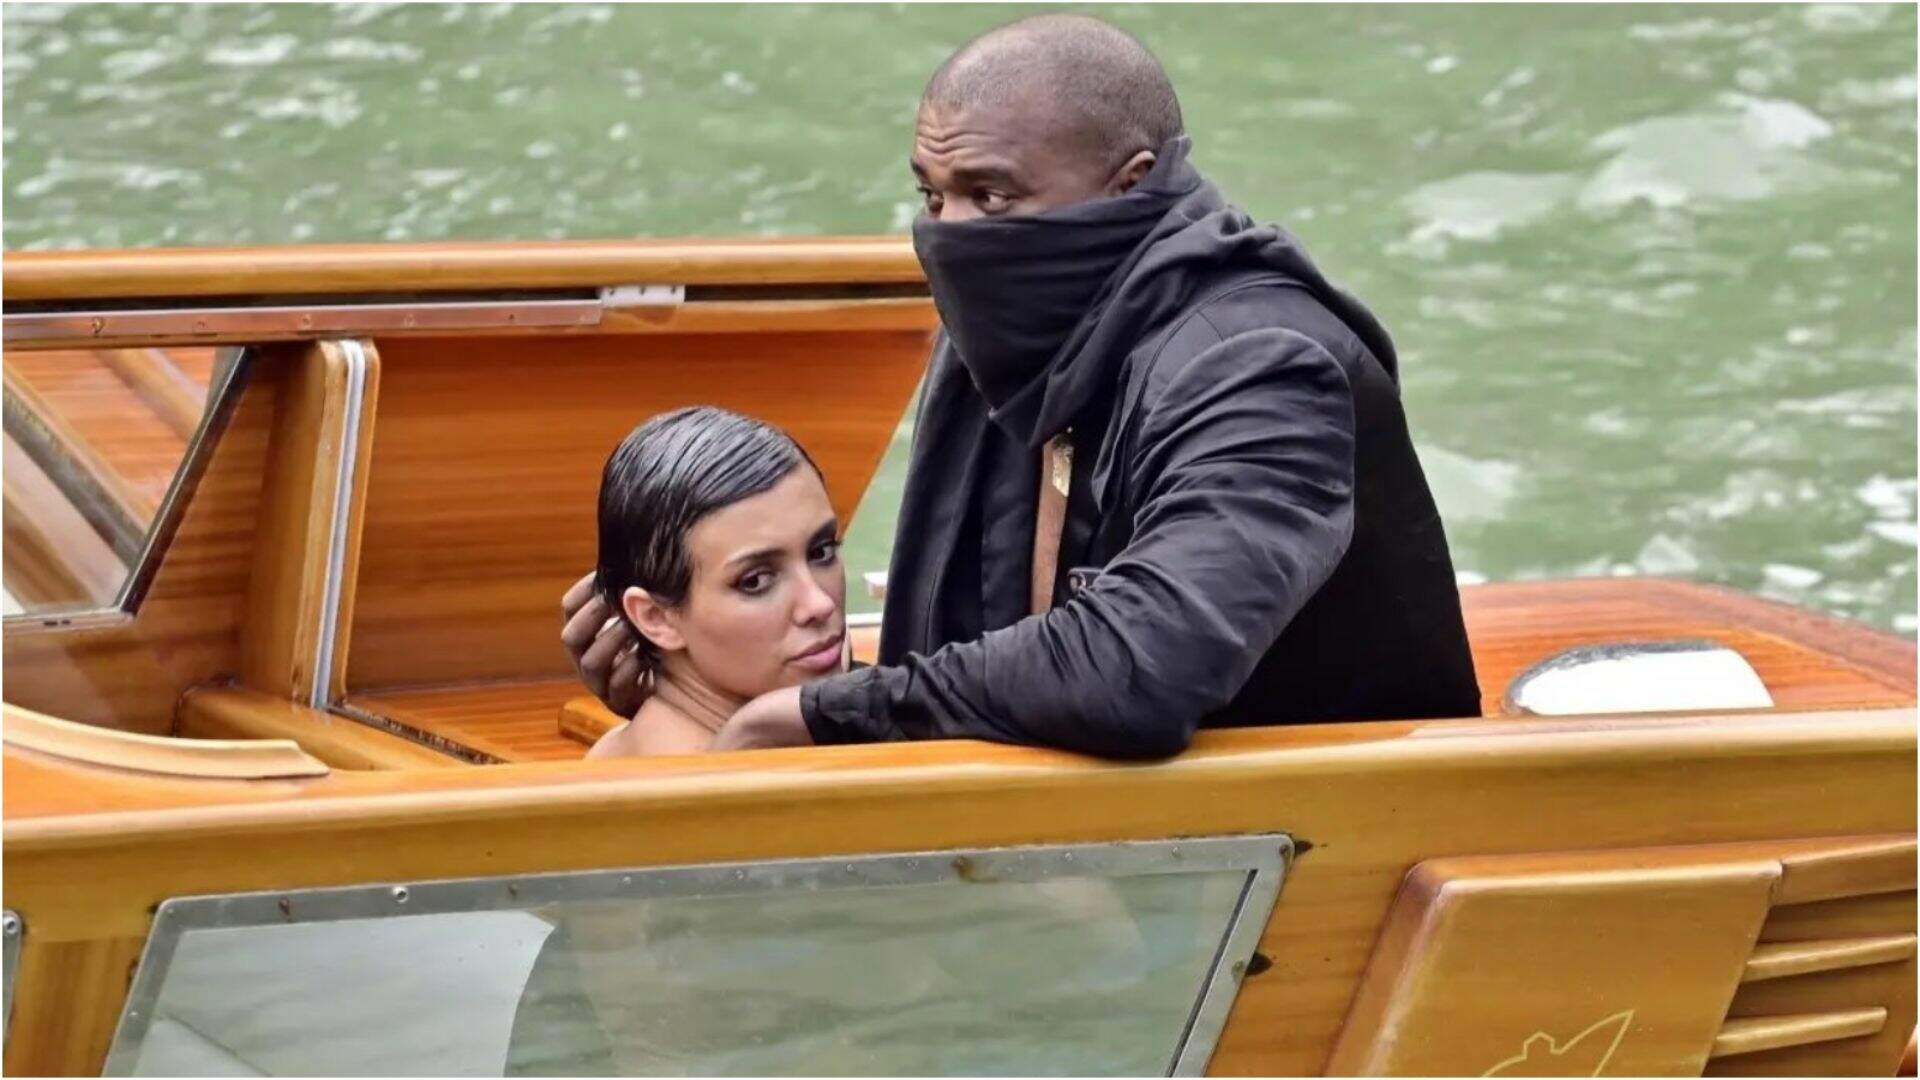 VAZOU! Kanye West é flagrado com a calça abaixada em barco e esposa com a cabeça onde não devia - Metropolitana FM